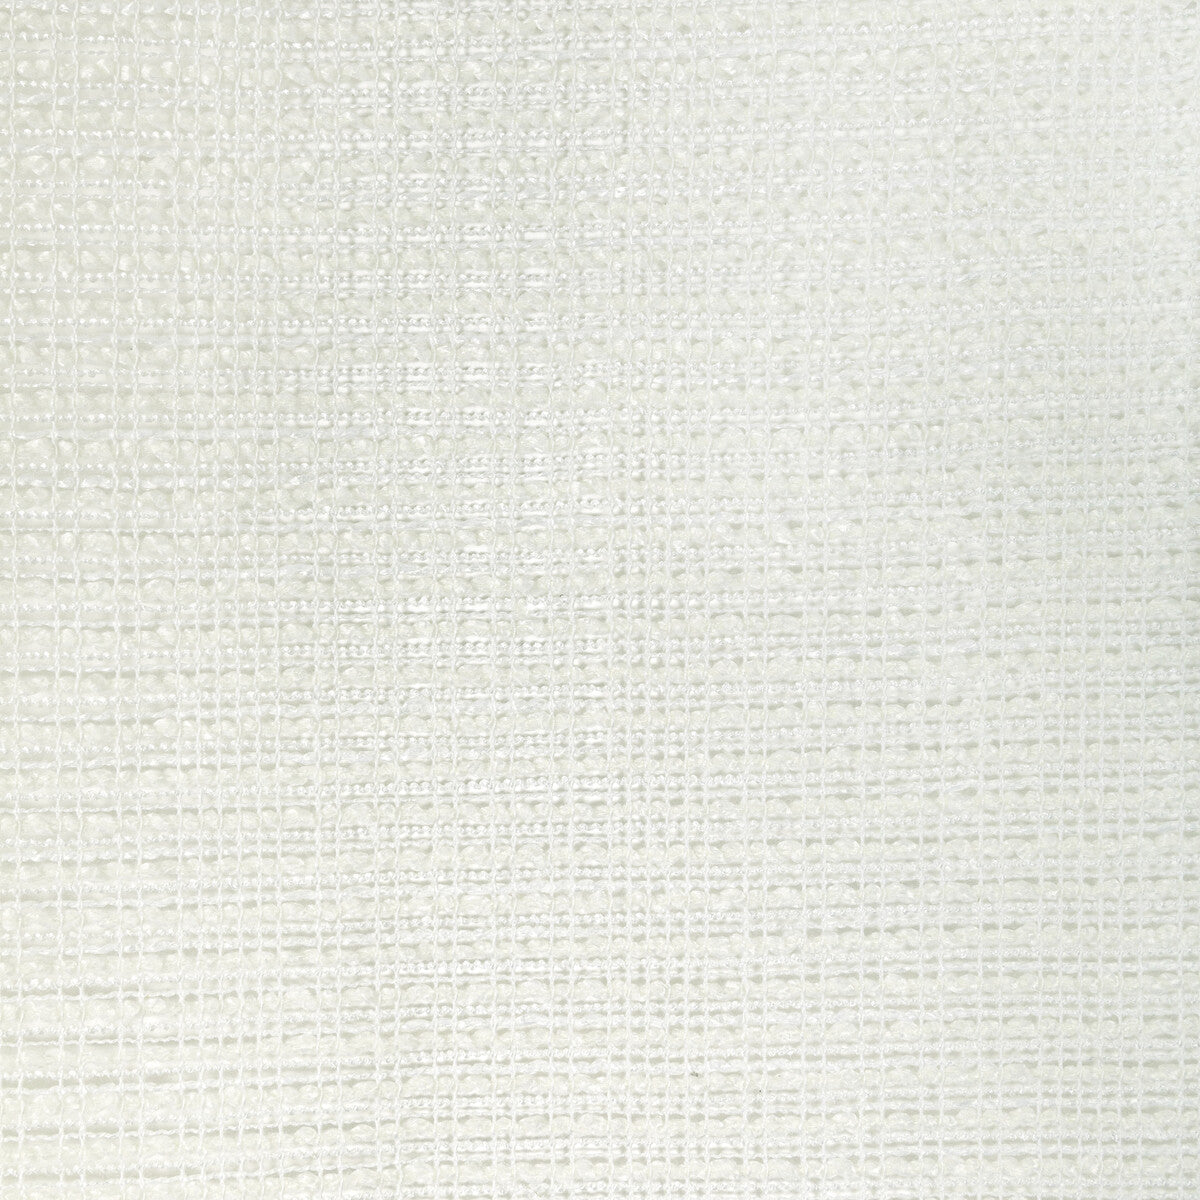 Kravet Basics fabric in 4943-1- color - pattern 4943.1.0 - by Kravet Basics